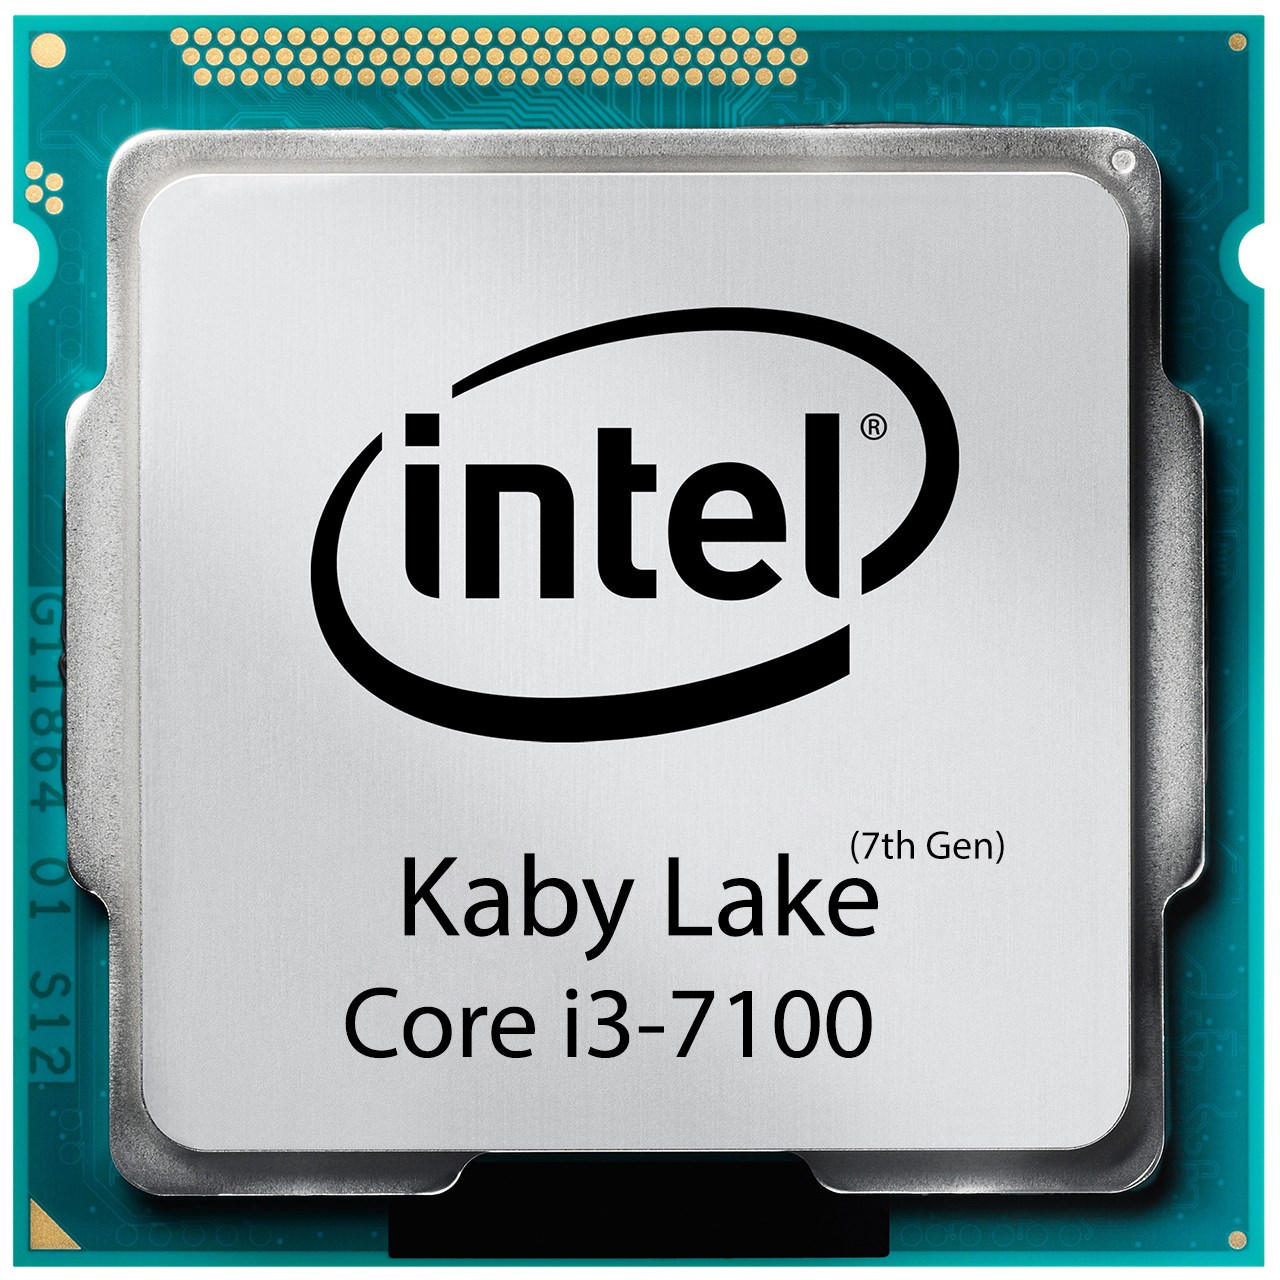 خرید،قیمت و مشخصات CPU INTEL پردازنده اینتل Kaby Lake  Core i3-7100 - قائم آی تی